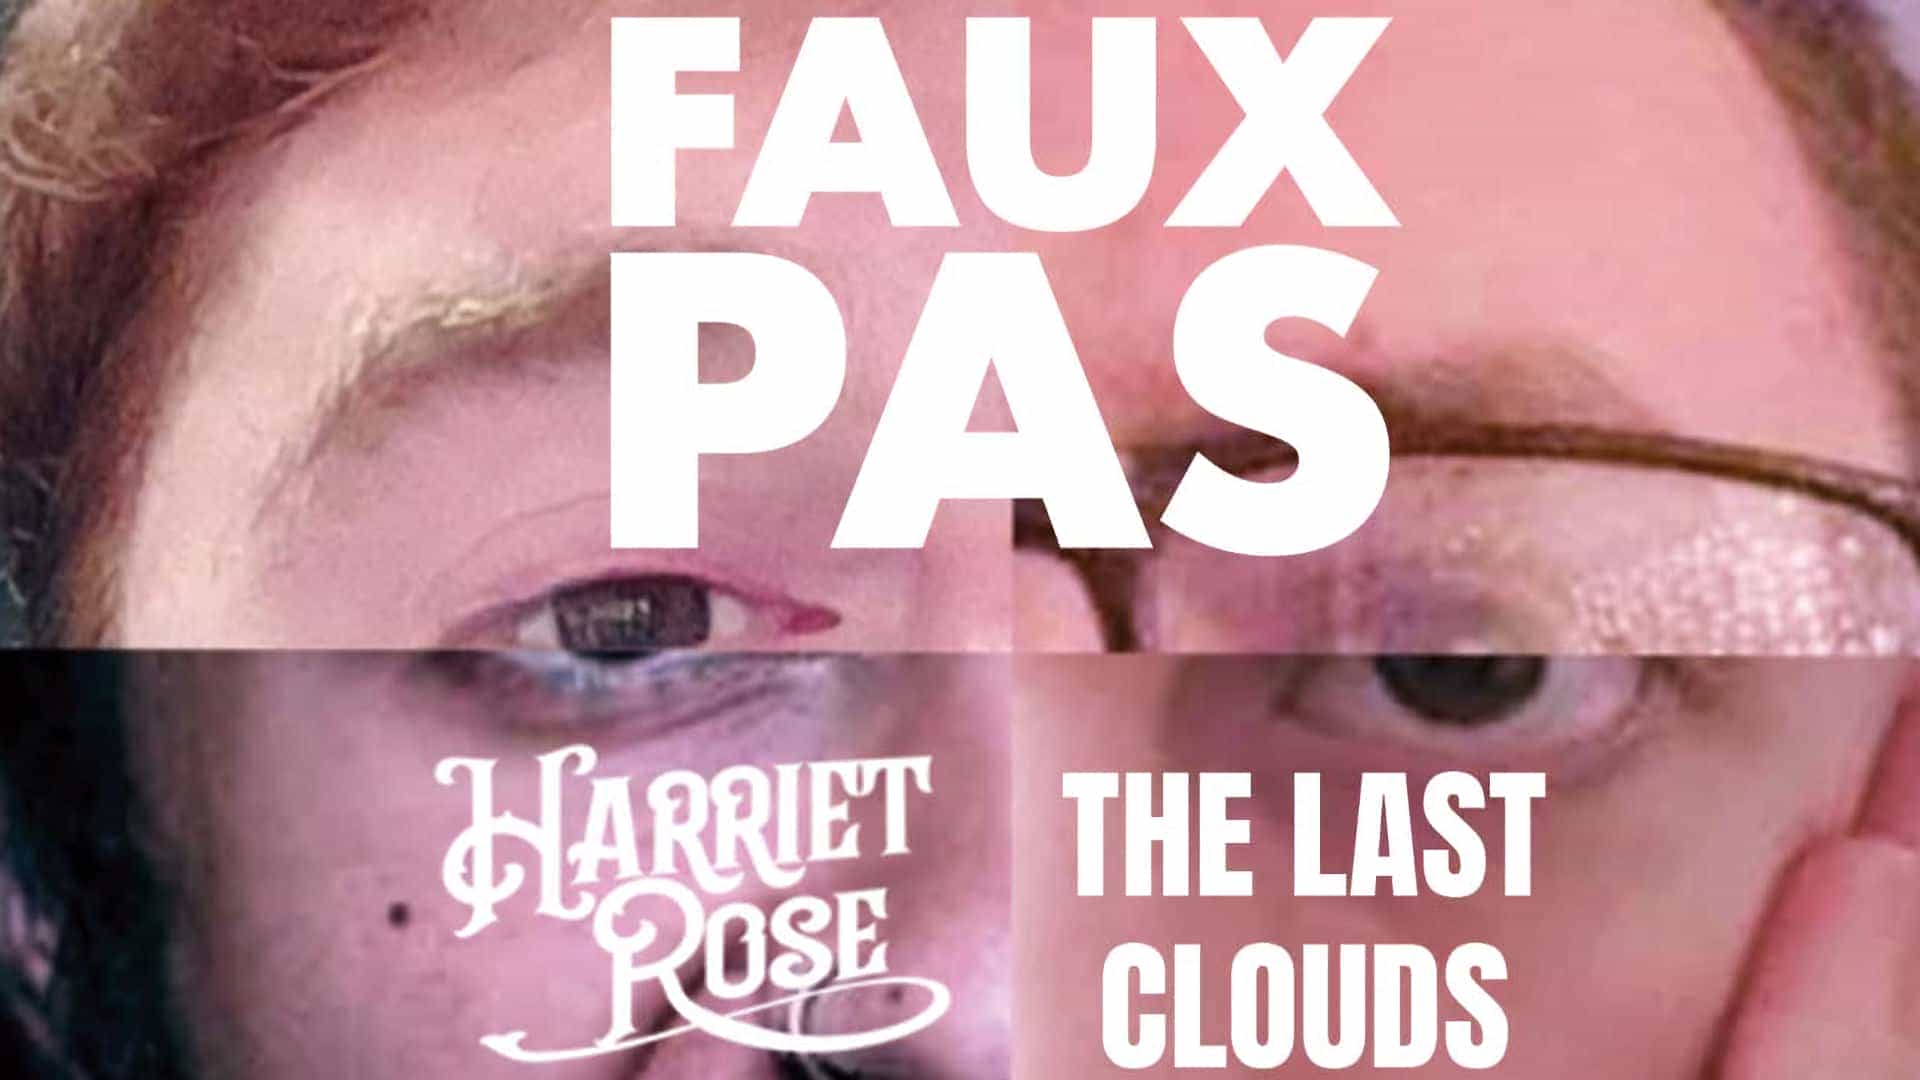 Faux Pas + Harriet Rose + The Last Clouds